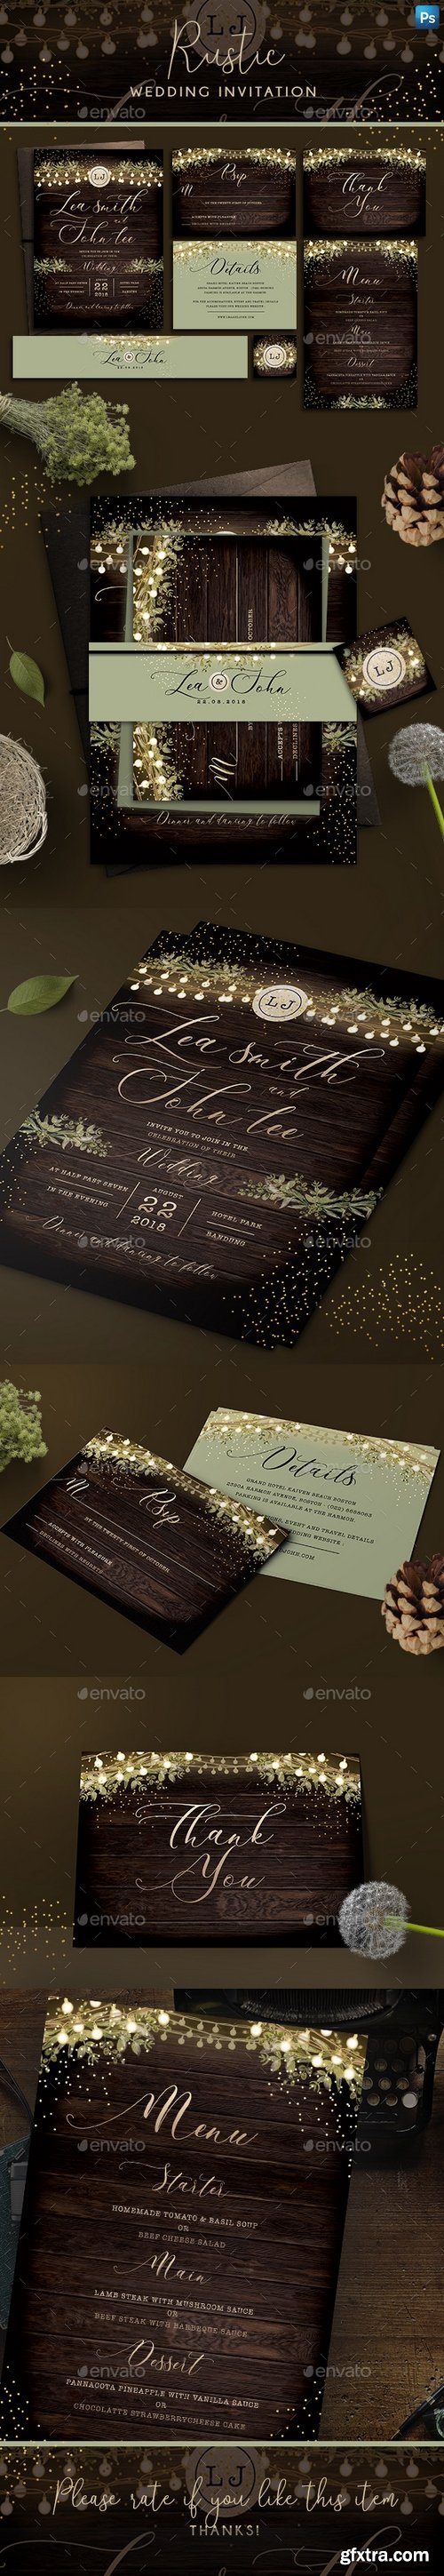 Graphicriver - Rustic Wedding Invitation 22084287